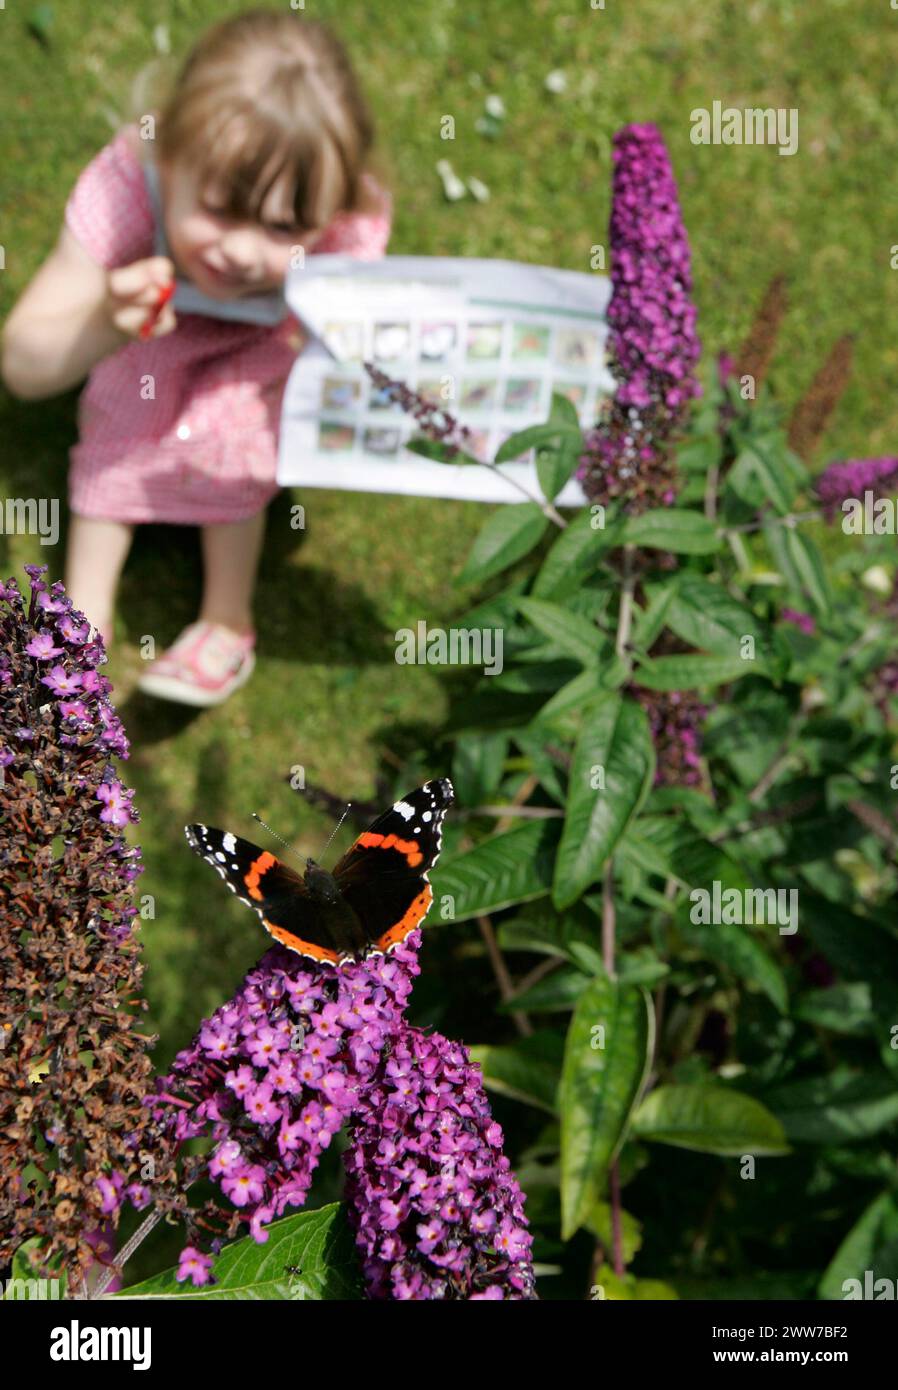 25/07/11..Freya Kirkpatrick (3) registra un Ammiraglio Rosso su un cespuglio di buddleia nel suo giardino vicino ad Ashbourne, Derbyshire... il sole dà il benvenuto a Butterfly co Foto Stock